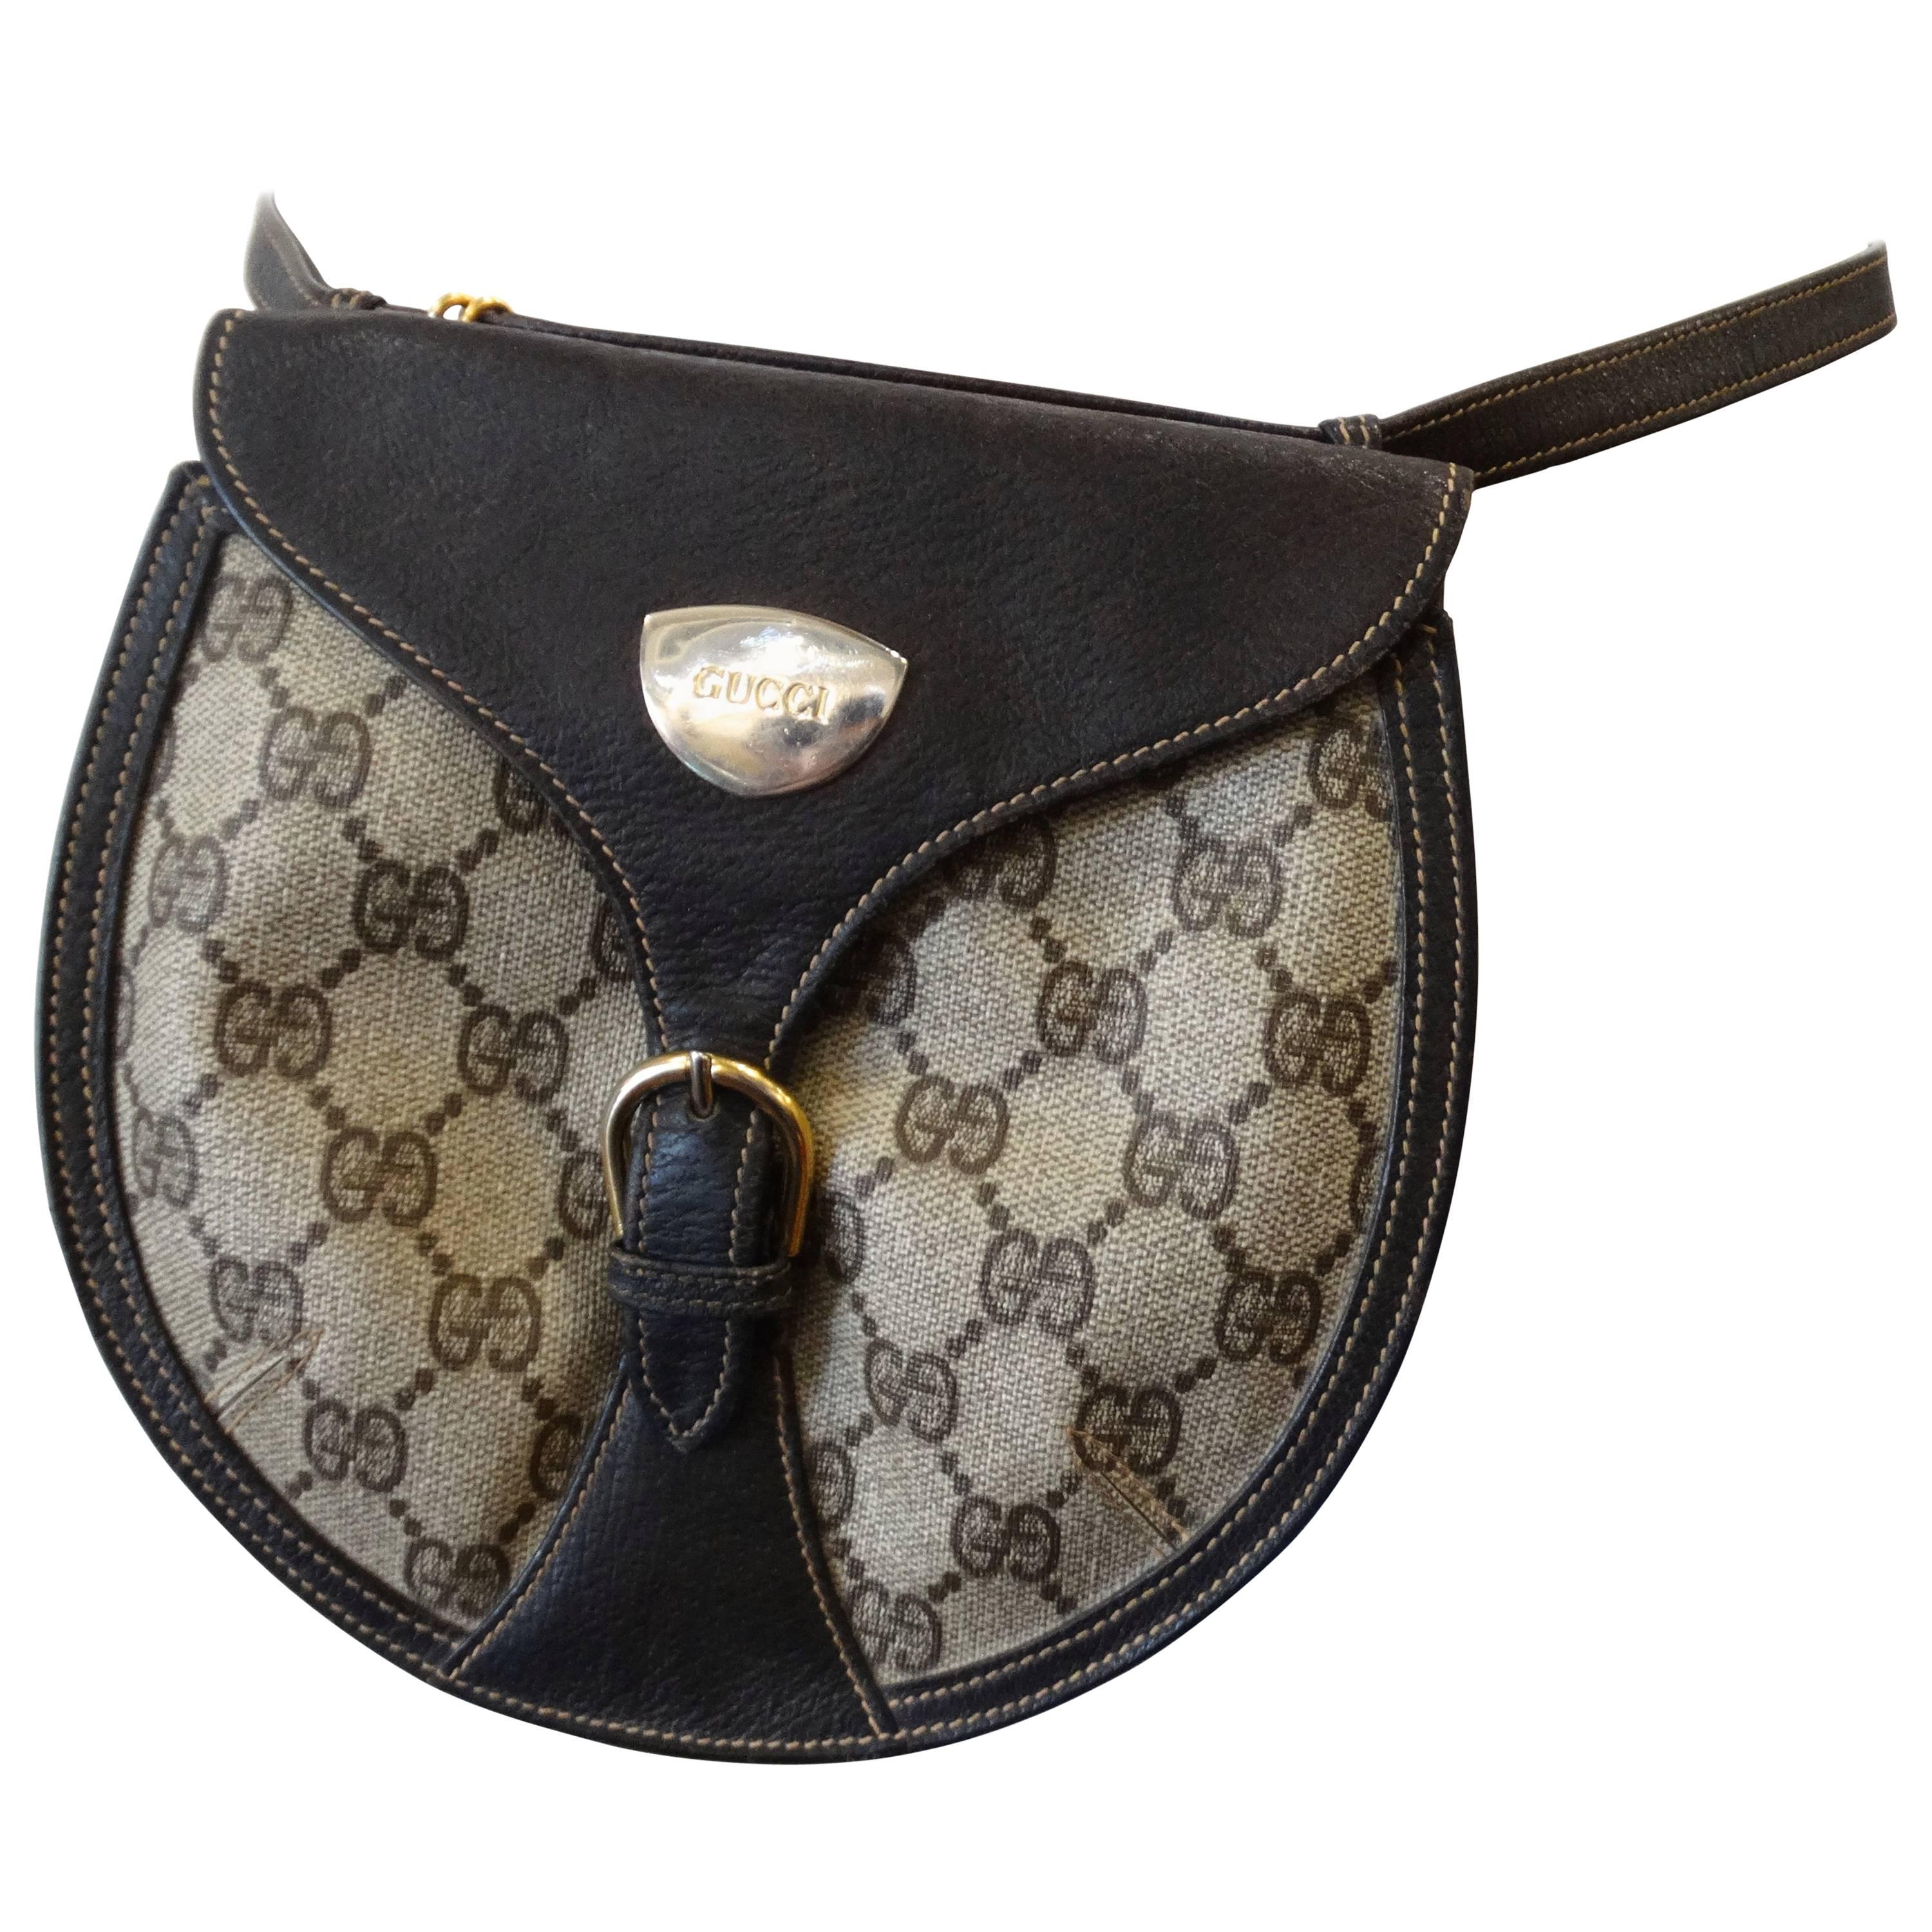 1980s Gucci Belt Satchel Bag